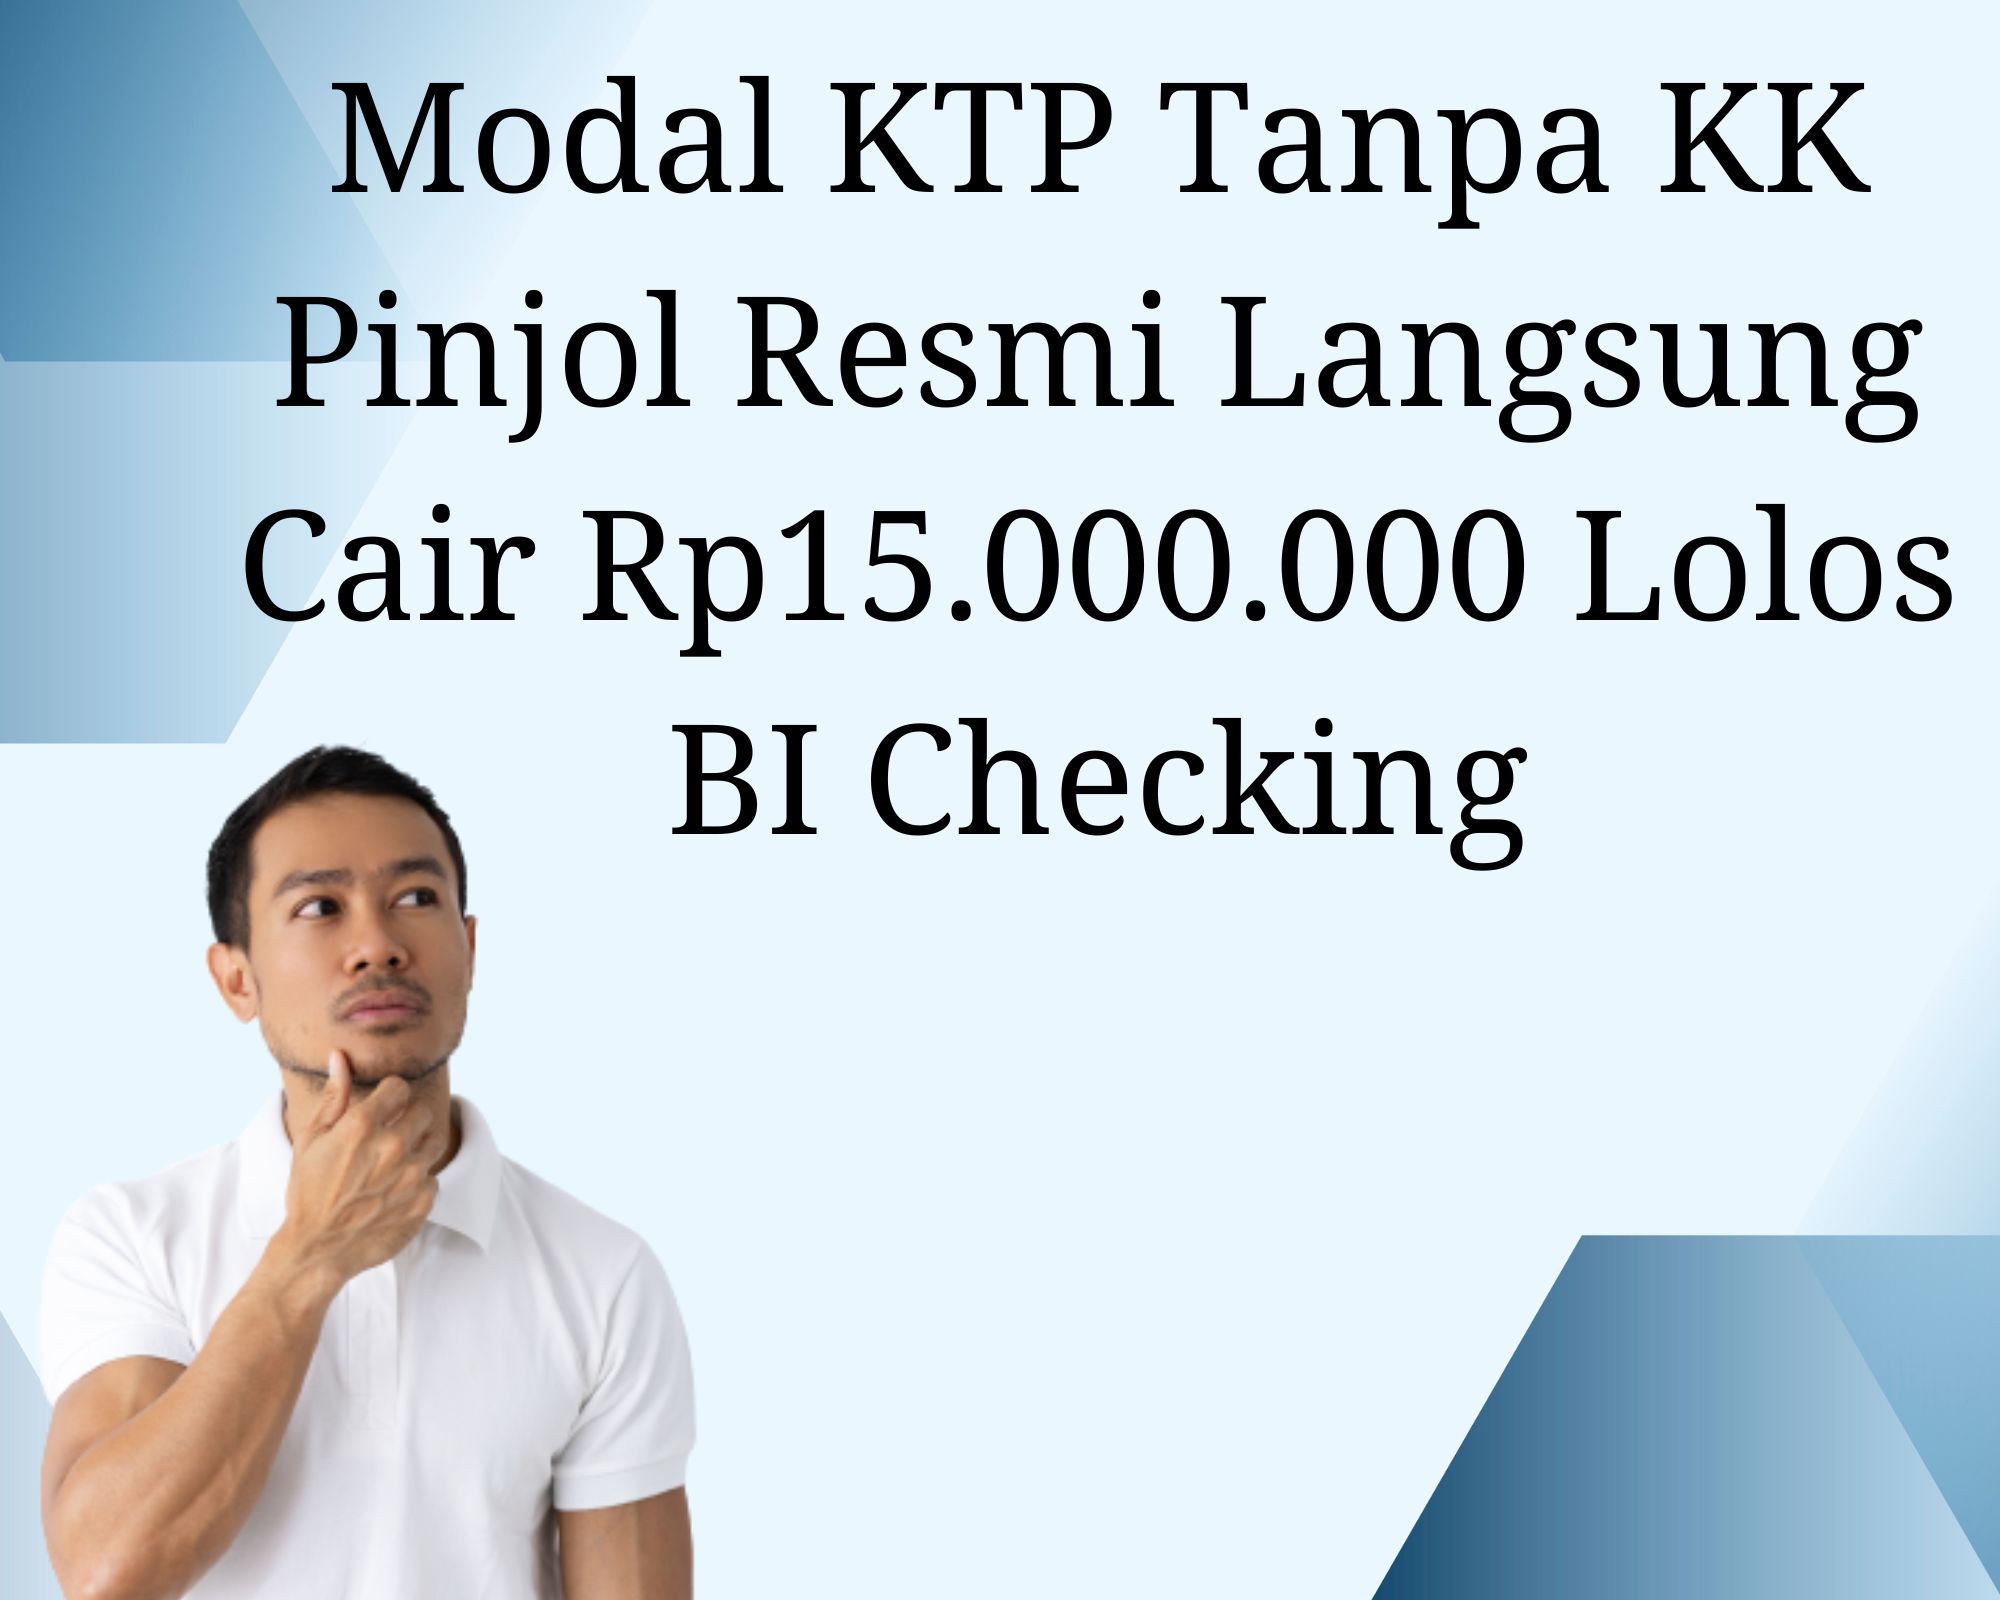 Modal KTP Tanpa KK Pinjol Resmi Langsung Cair Rp15.000.000 Lolos BI Checking